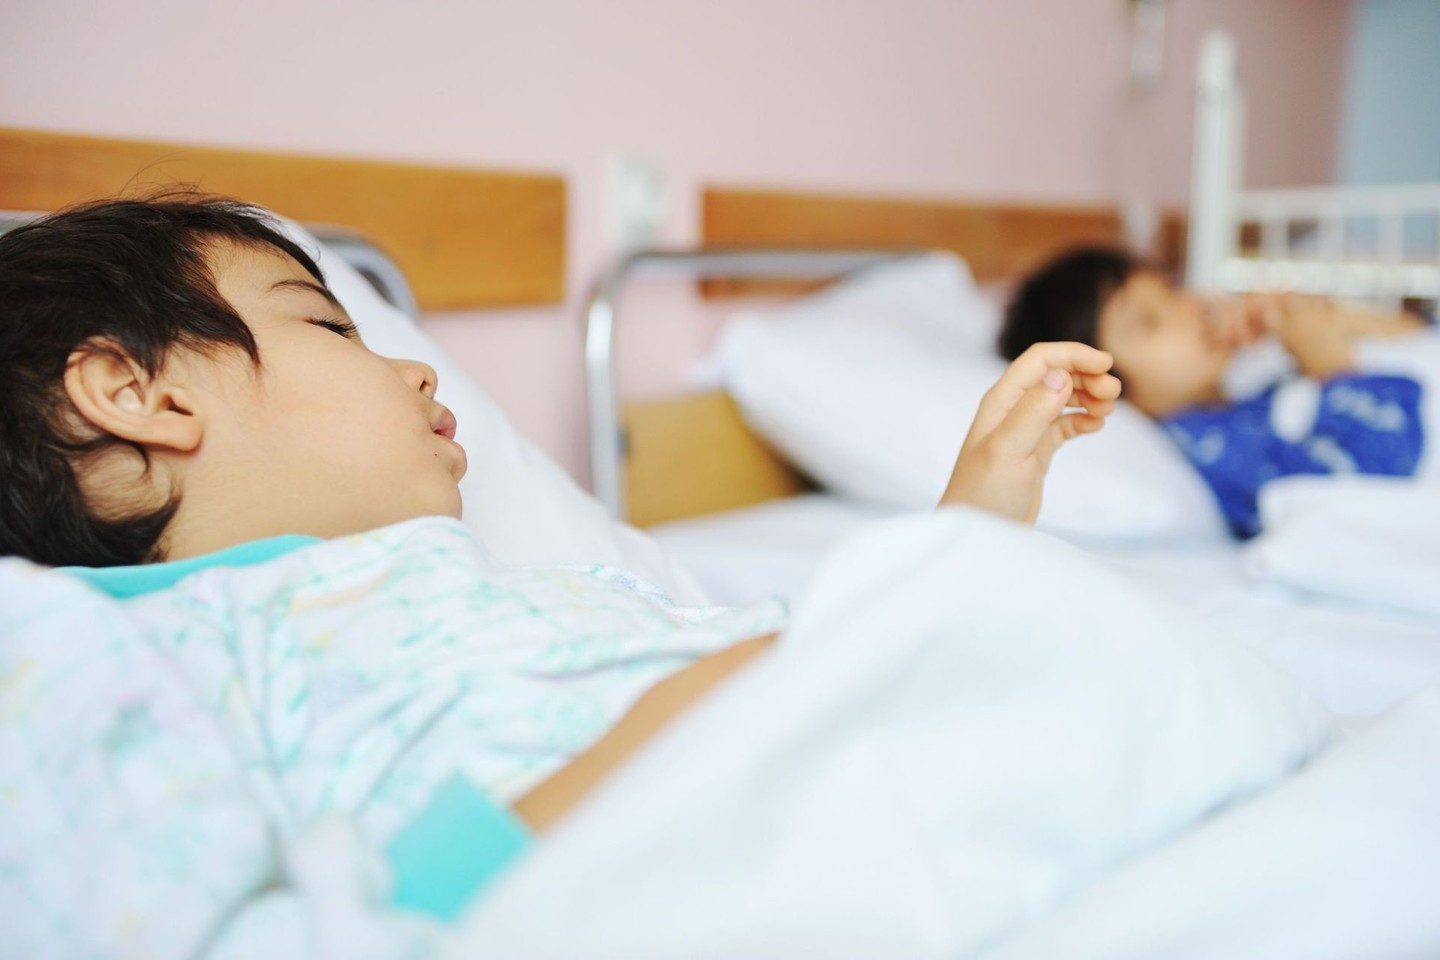 Kauno klinikinėje ligoninėje netuštėja vaikų palatos, kuriose gydomi tuberkulioze sergantys mažieji pacientai.<br>123rf.com asociatyvi nuotr.